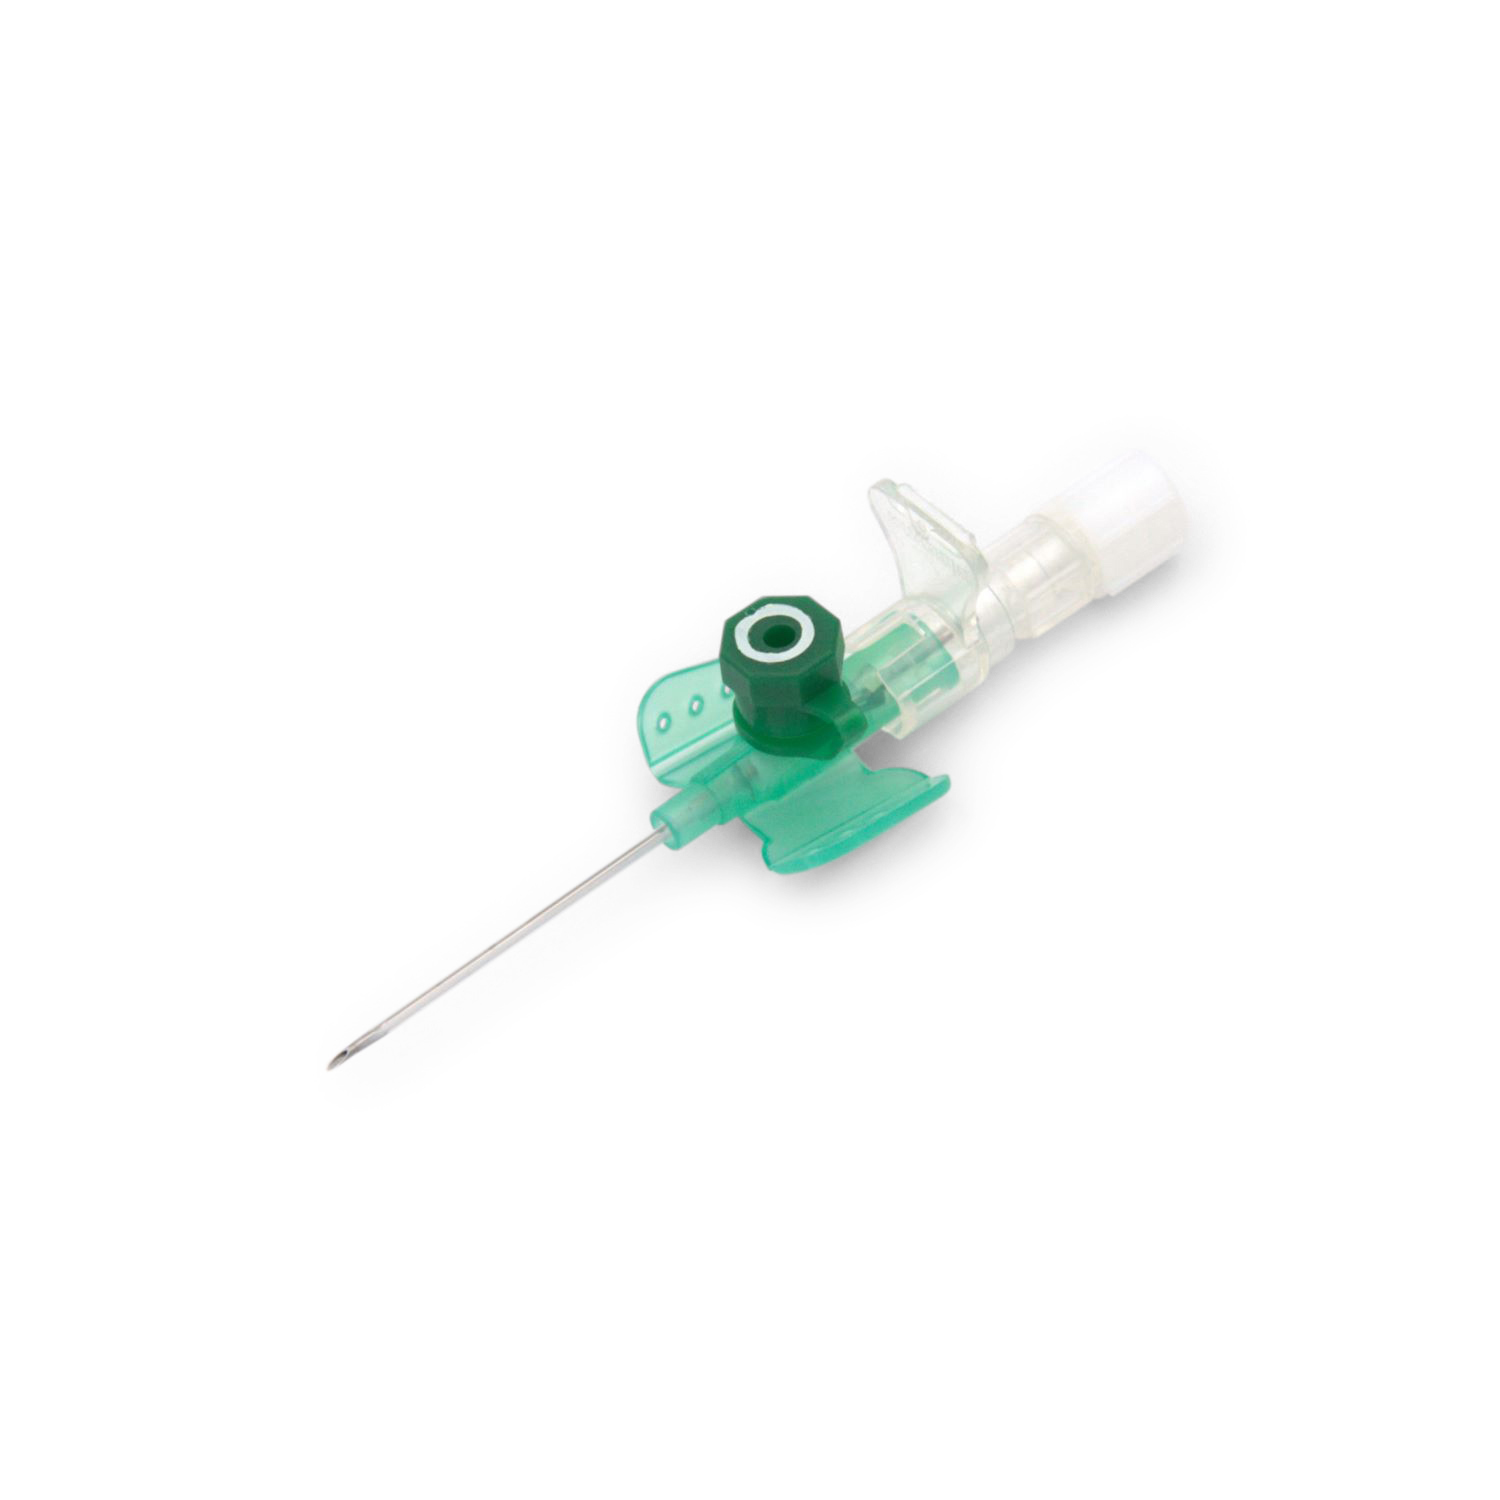 Vasofix® Safety Sicherheitsvenenverweilkanüle (1,30 x 33 mm G 18 grün (mit weißem Ring))